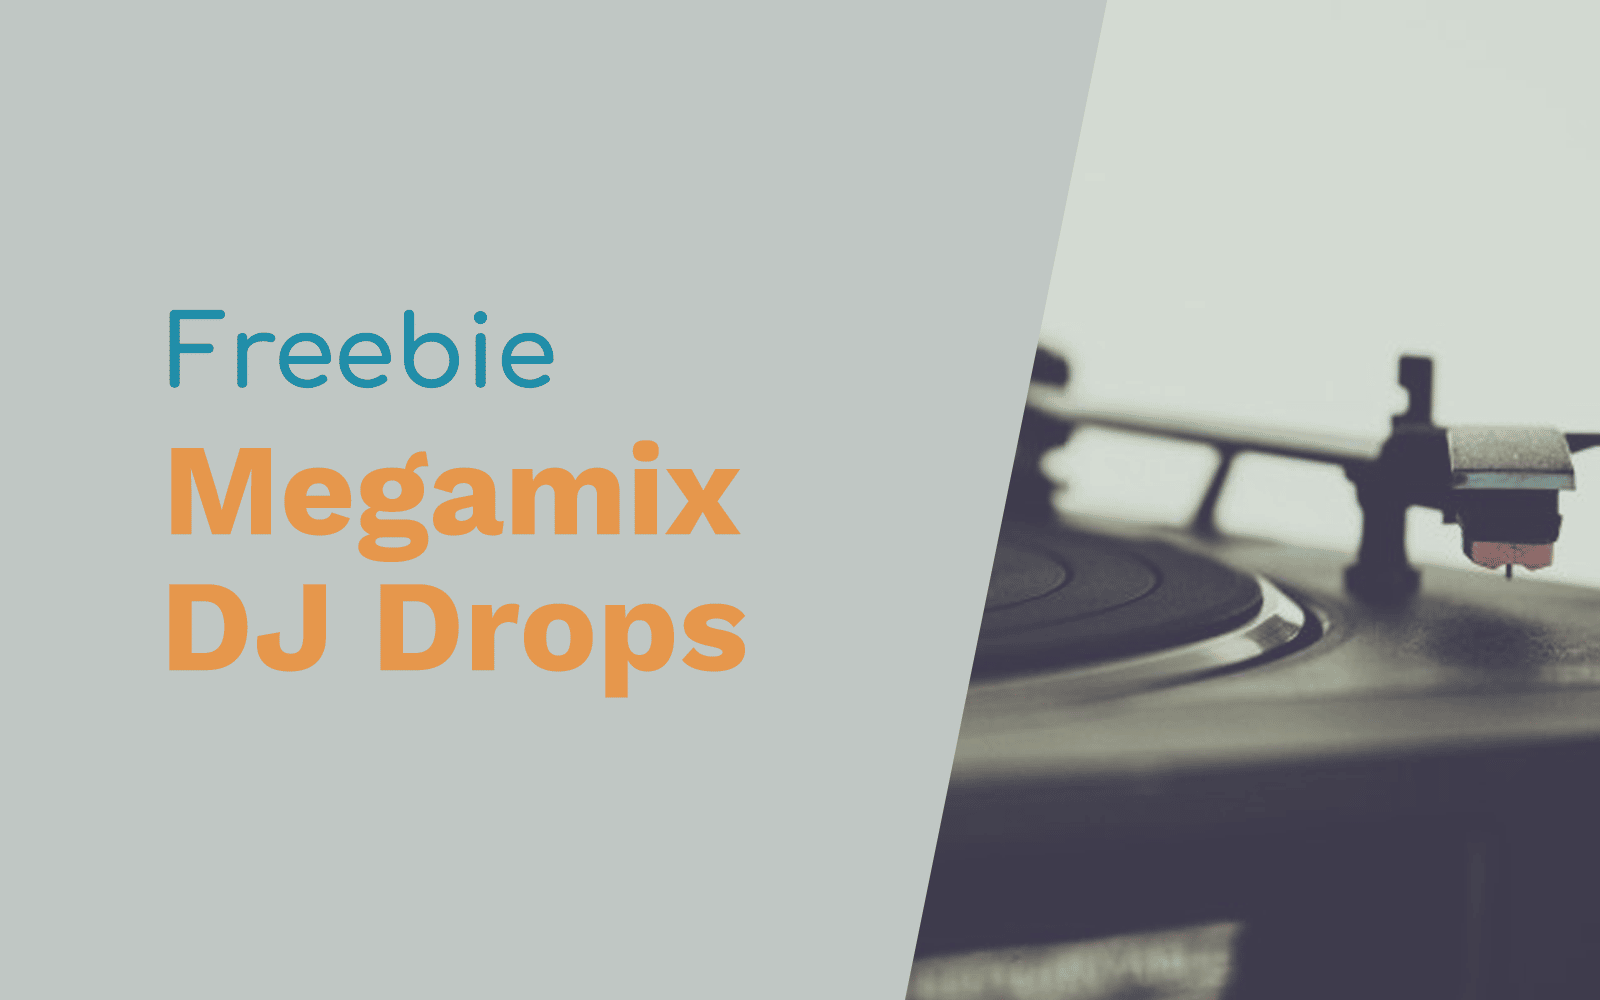 Megamix DJ Drops DJ Drops dj drops Music Radio Creative